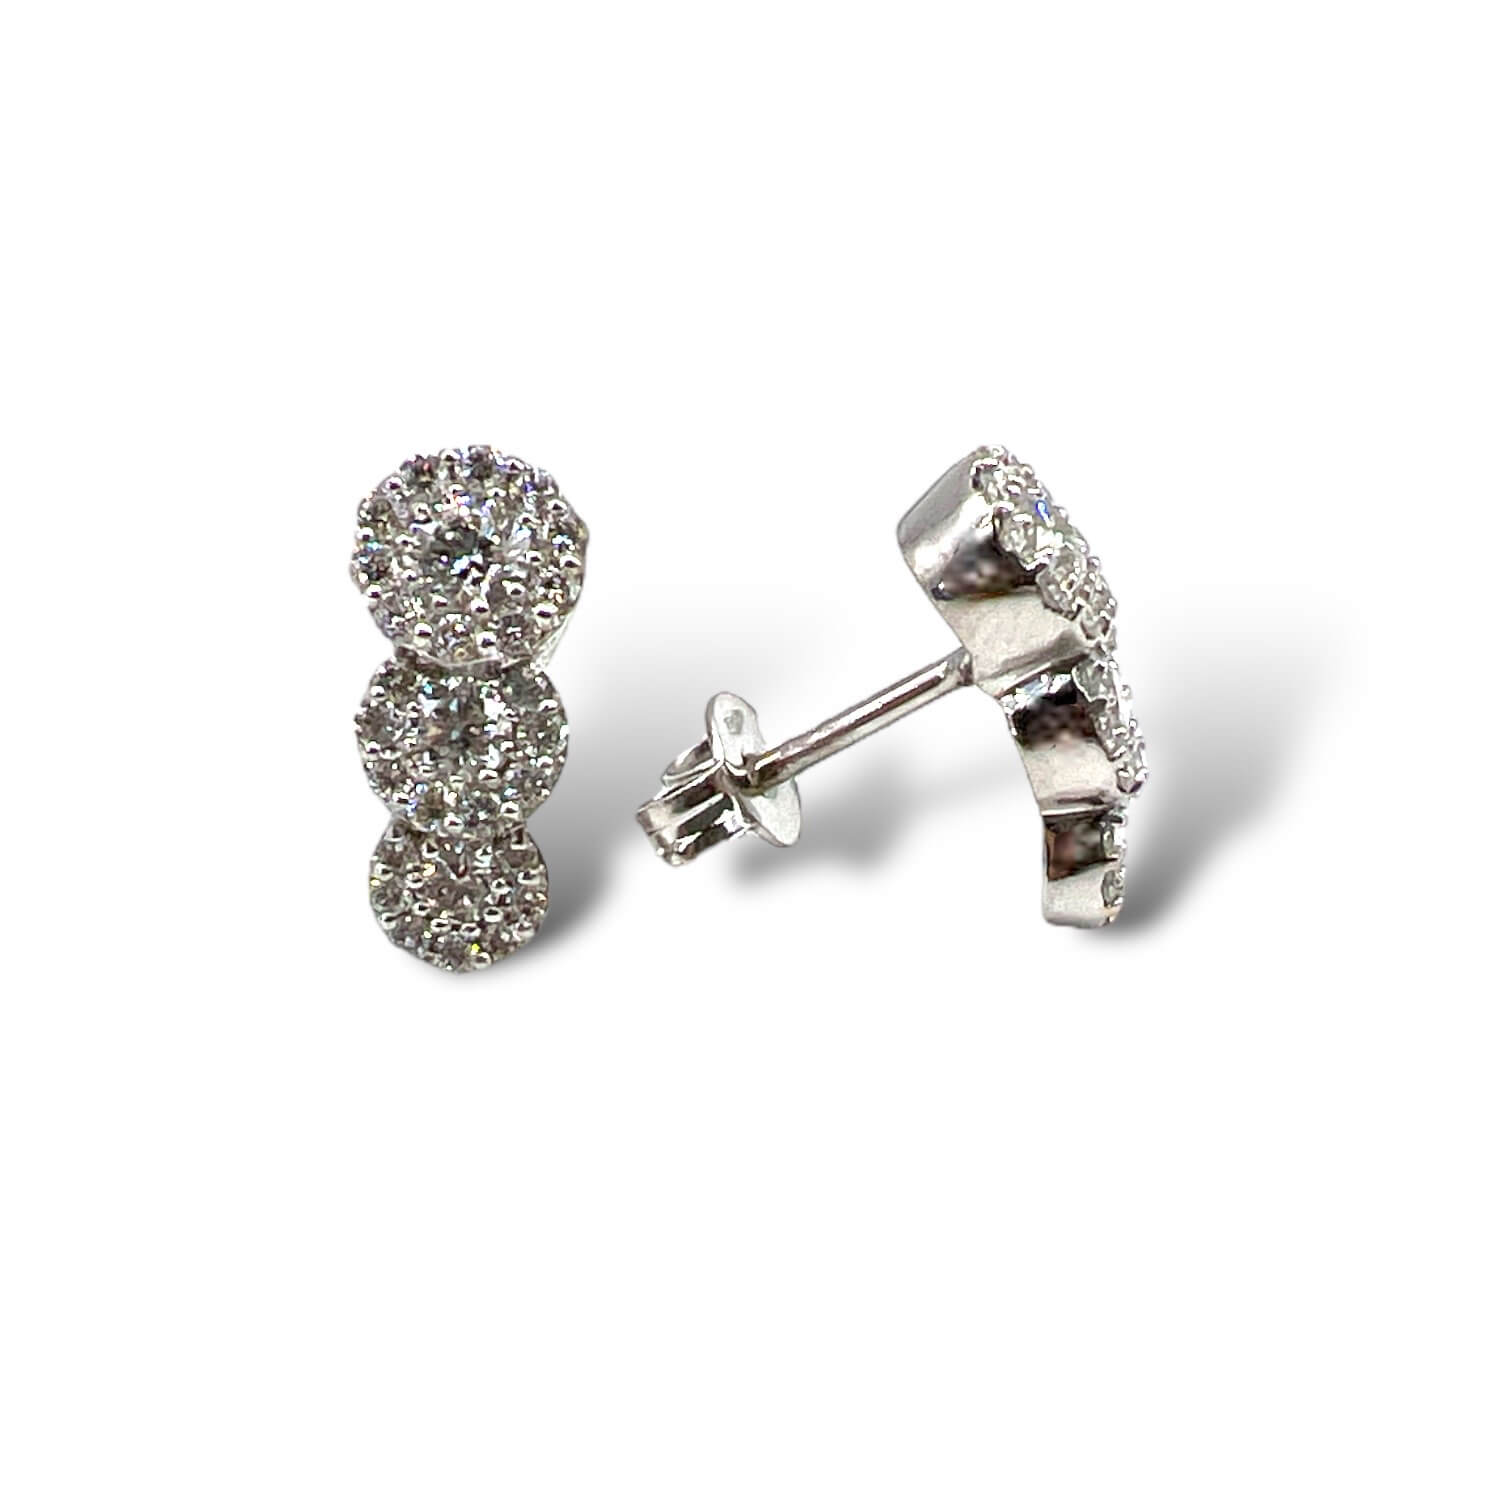 SILK diamond trilogy earrings art. OR1110-3